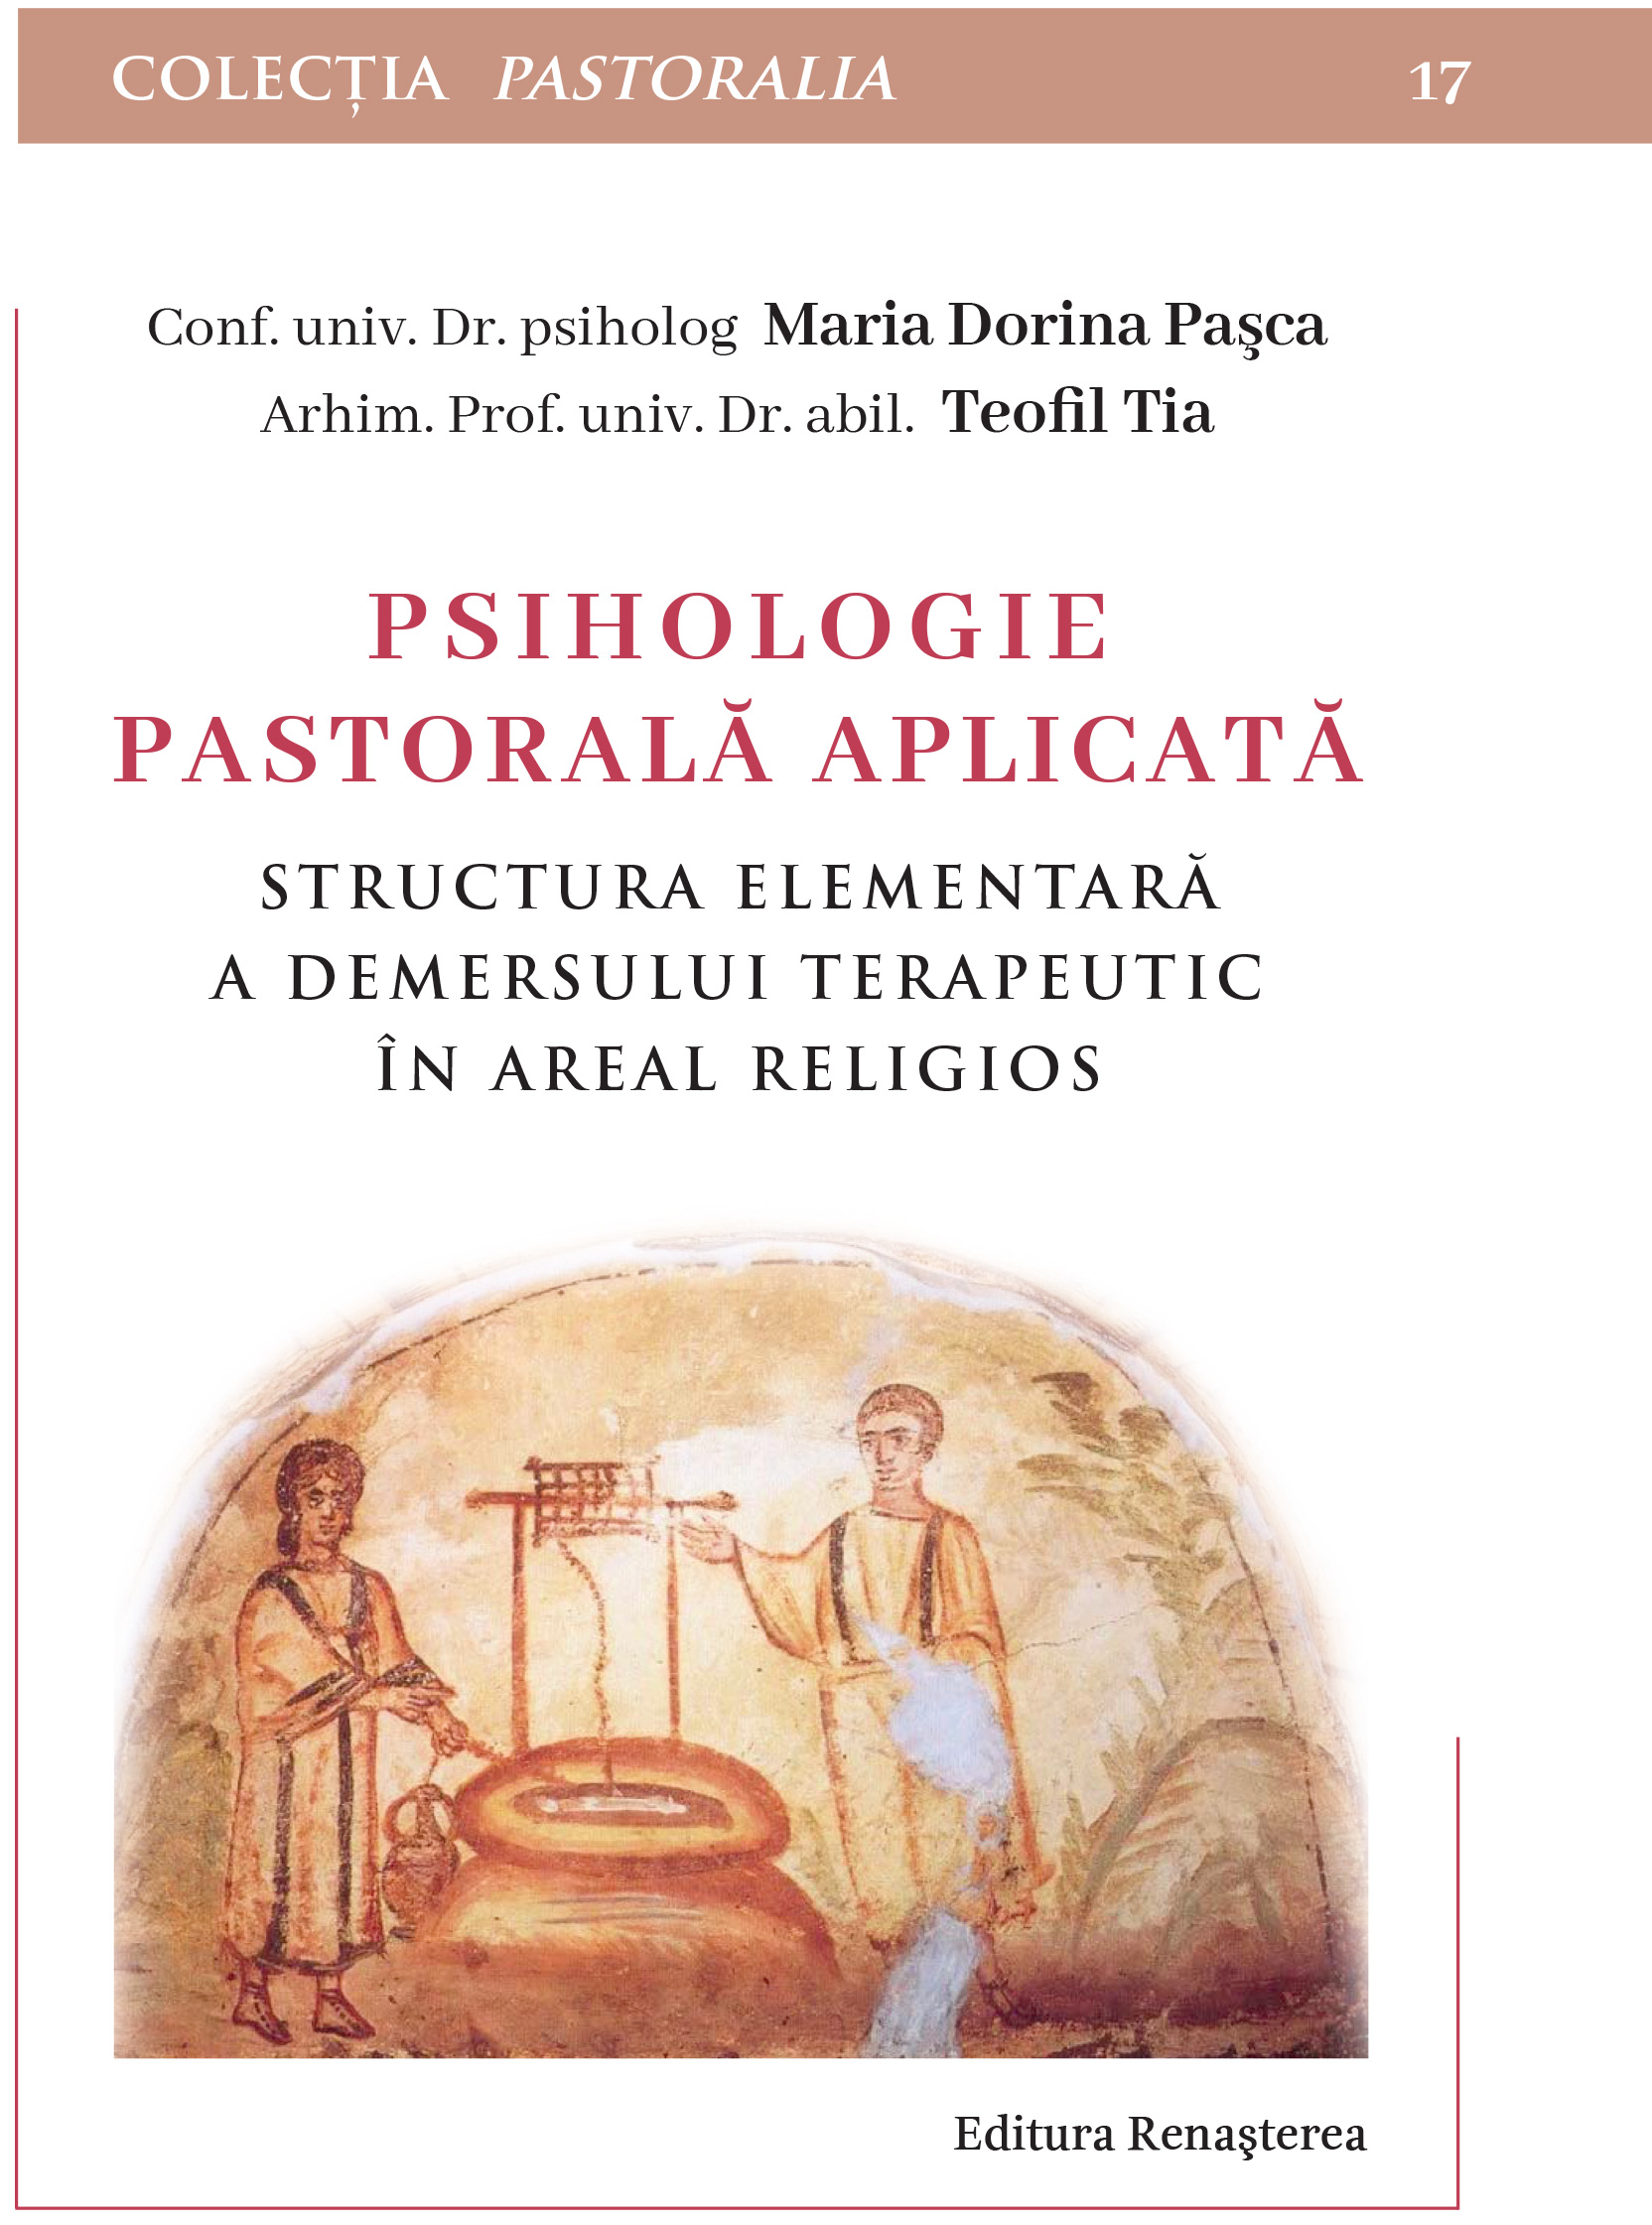 P001153 - Psihologie pastorală aplicată - Maria Dorina Pașca - Teofil Tia